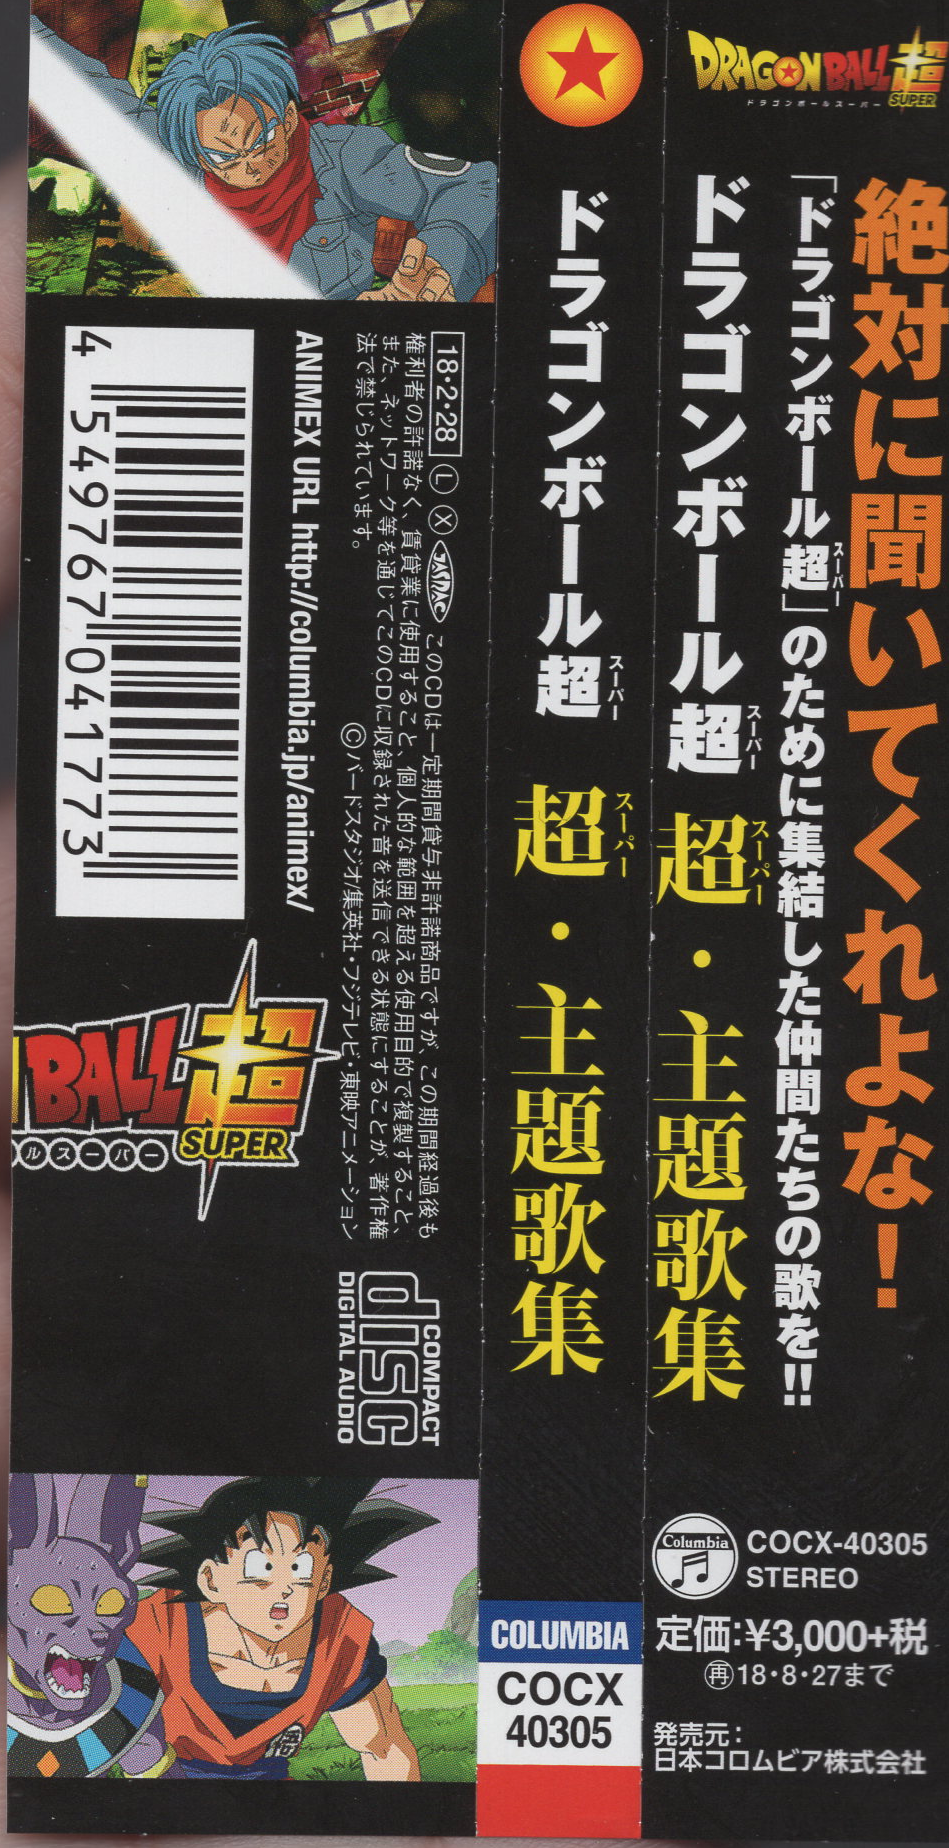 Dragonball Z Dragon Ball Super Theme Song Collection Original Soundtrack Cd Dragonball Japan Collectibles